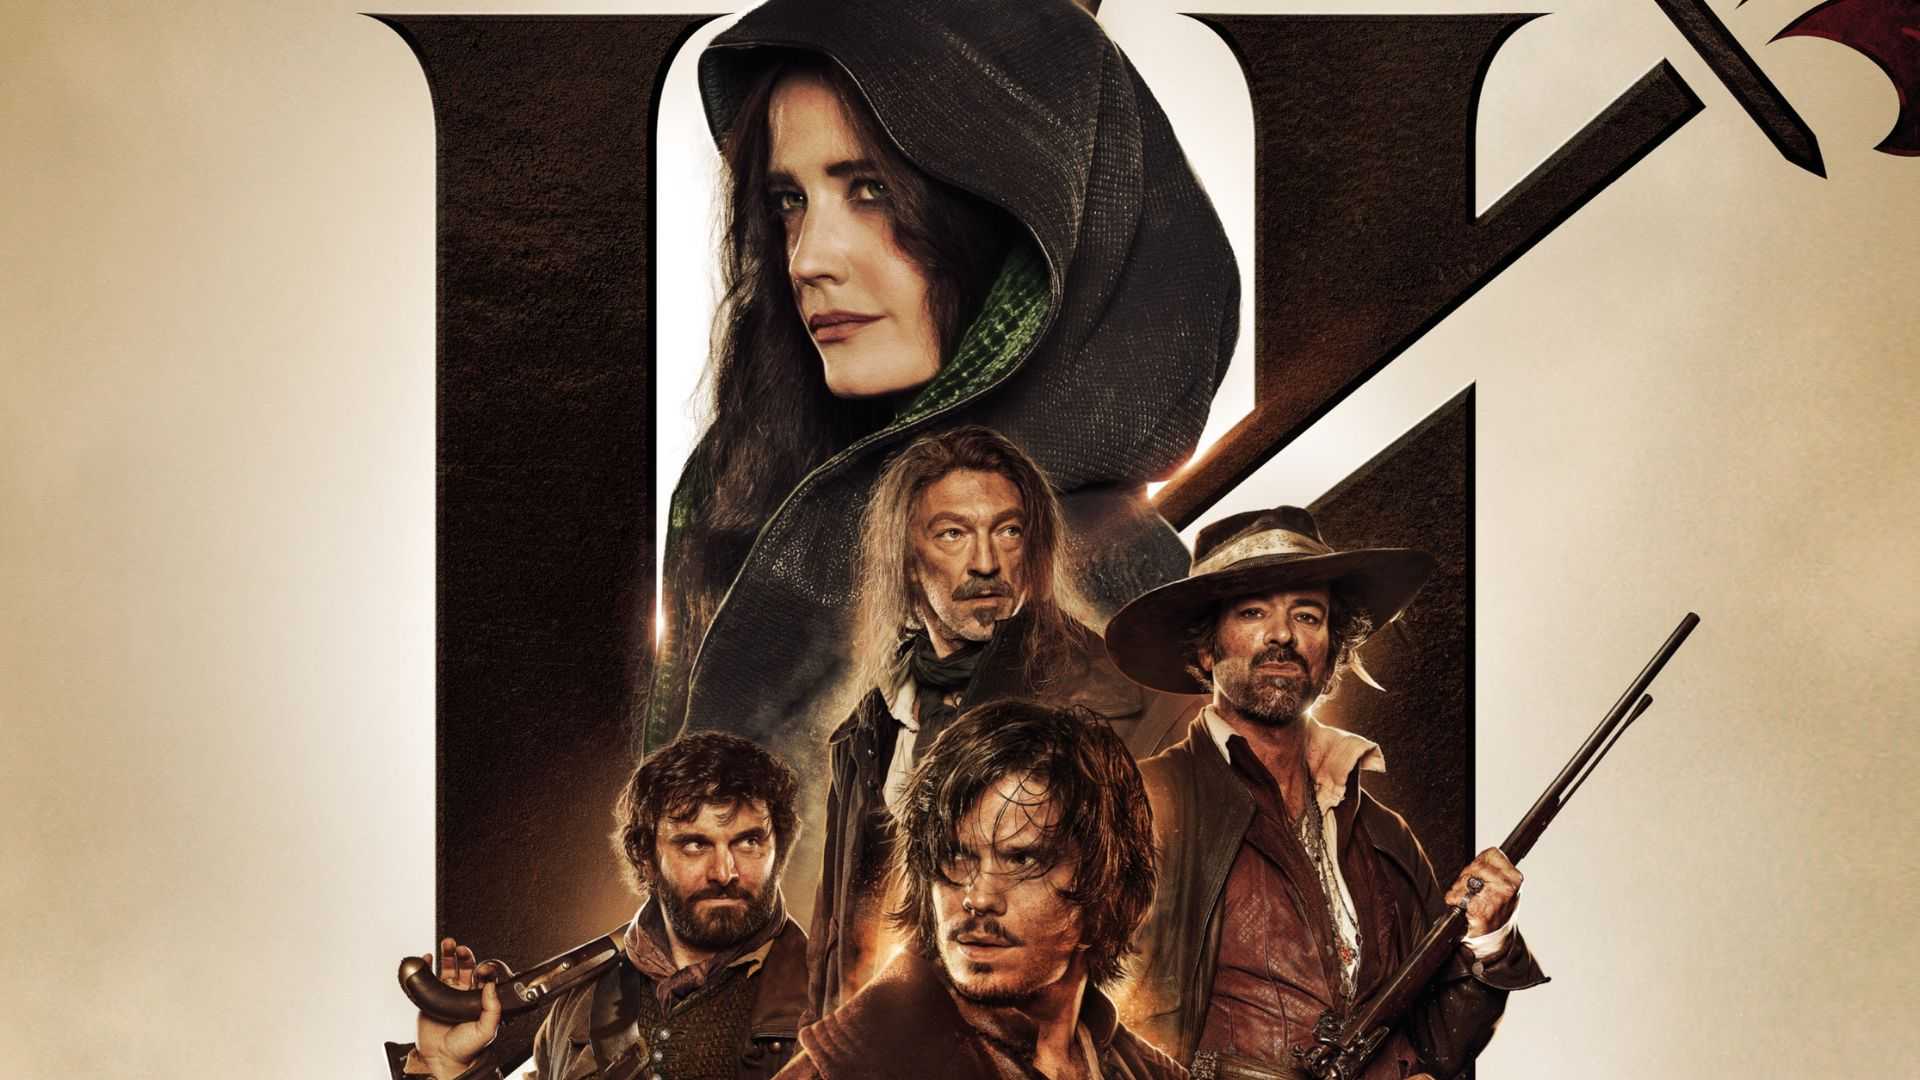 The Three Musketeers Review: जबरदस्त एक्शन का डोज देती है हॉलीवुड की ये फिल्म, बड़ी ही मसालेदार है कहानी